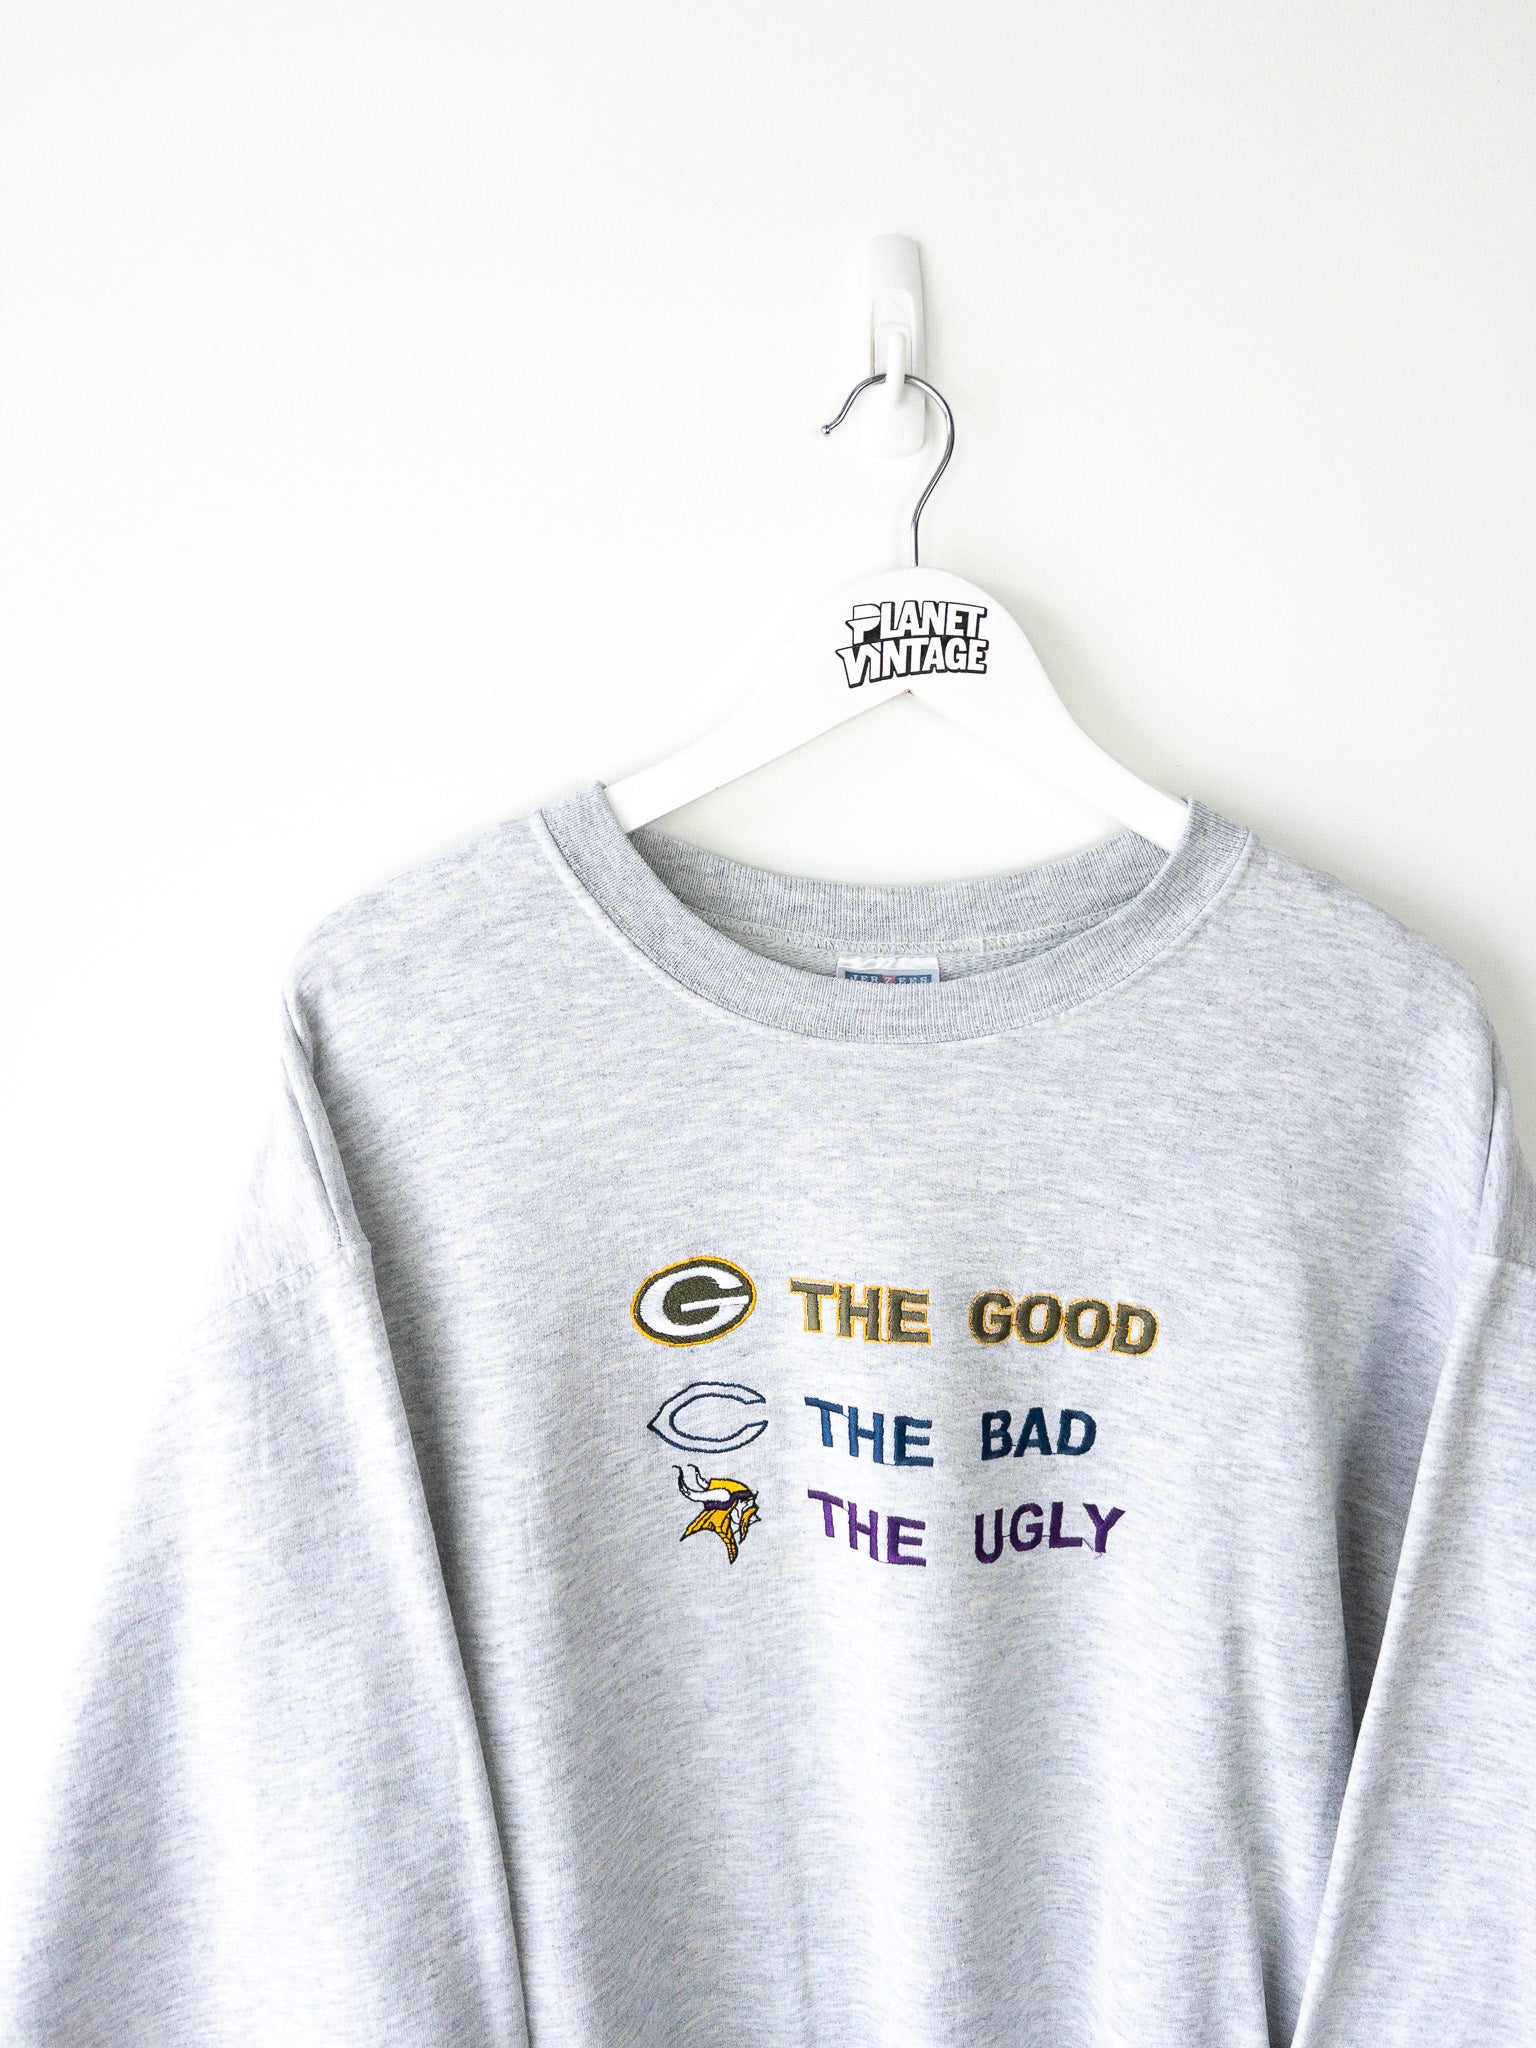 Vintage Green Bay Packers Sweatshirt (L)